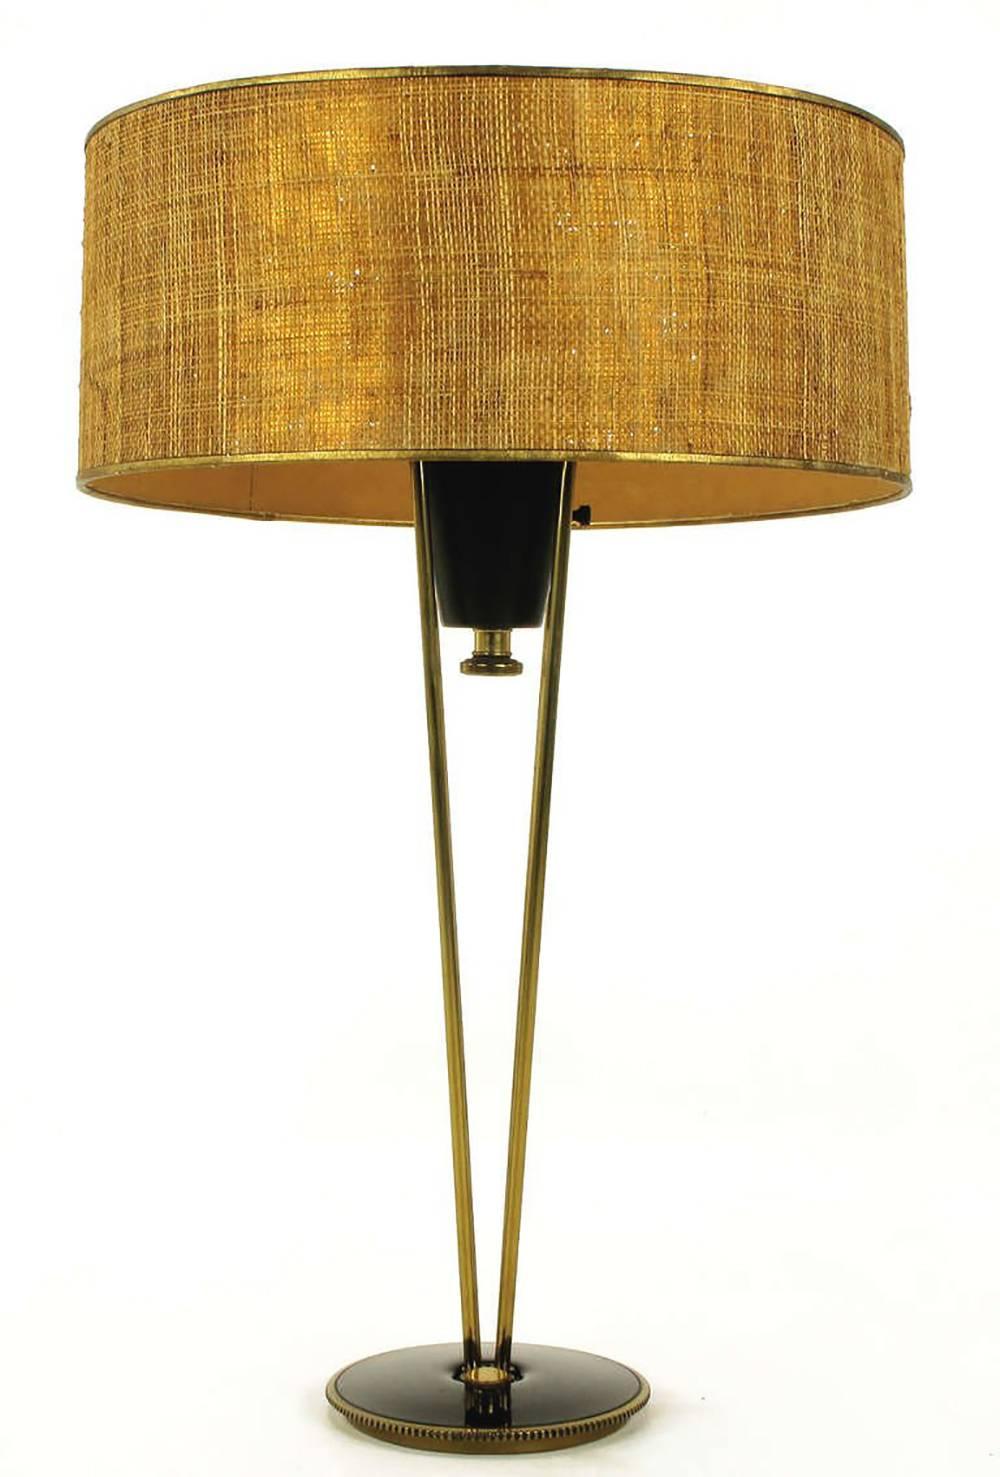 Rare lampe de table à suspension Stiffel des années 1950. Quatre tiges en laiton avec des fleurons en forme de boule soutiennent une tasse laquée noire avec une prise de lumière interne. Diffuseur original en acier laqué blanc cassé et abat-jour